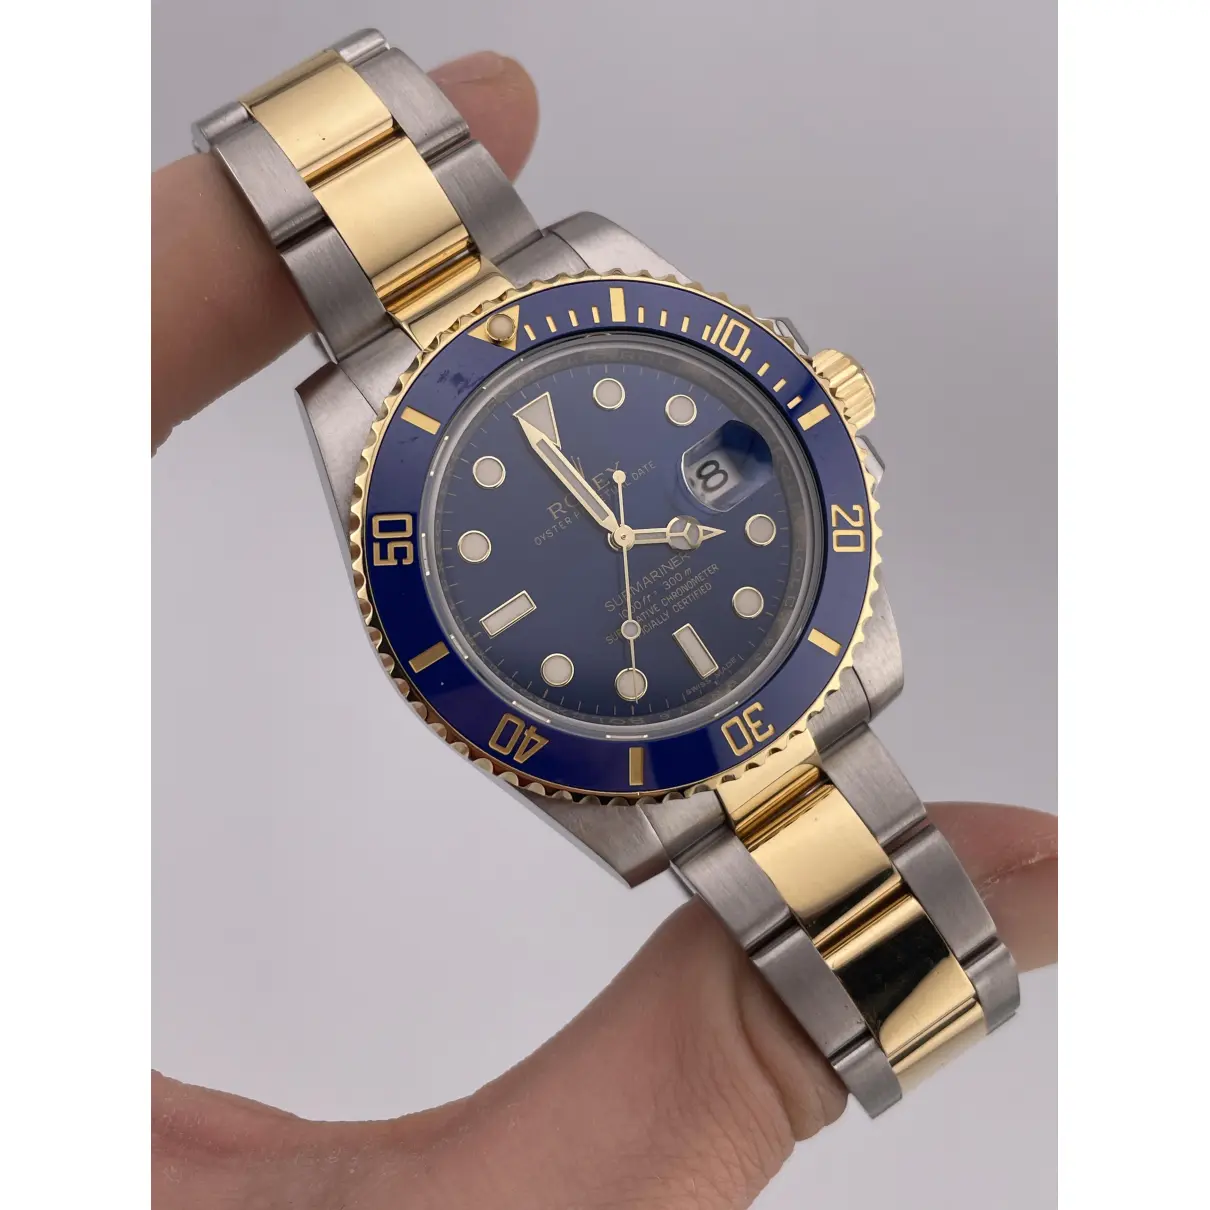 Buy Rolex Submariner watch online